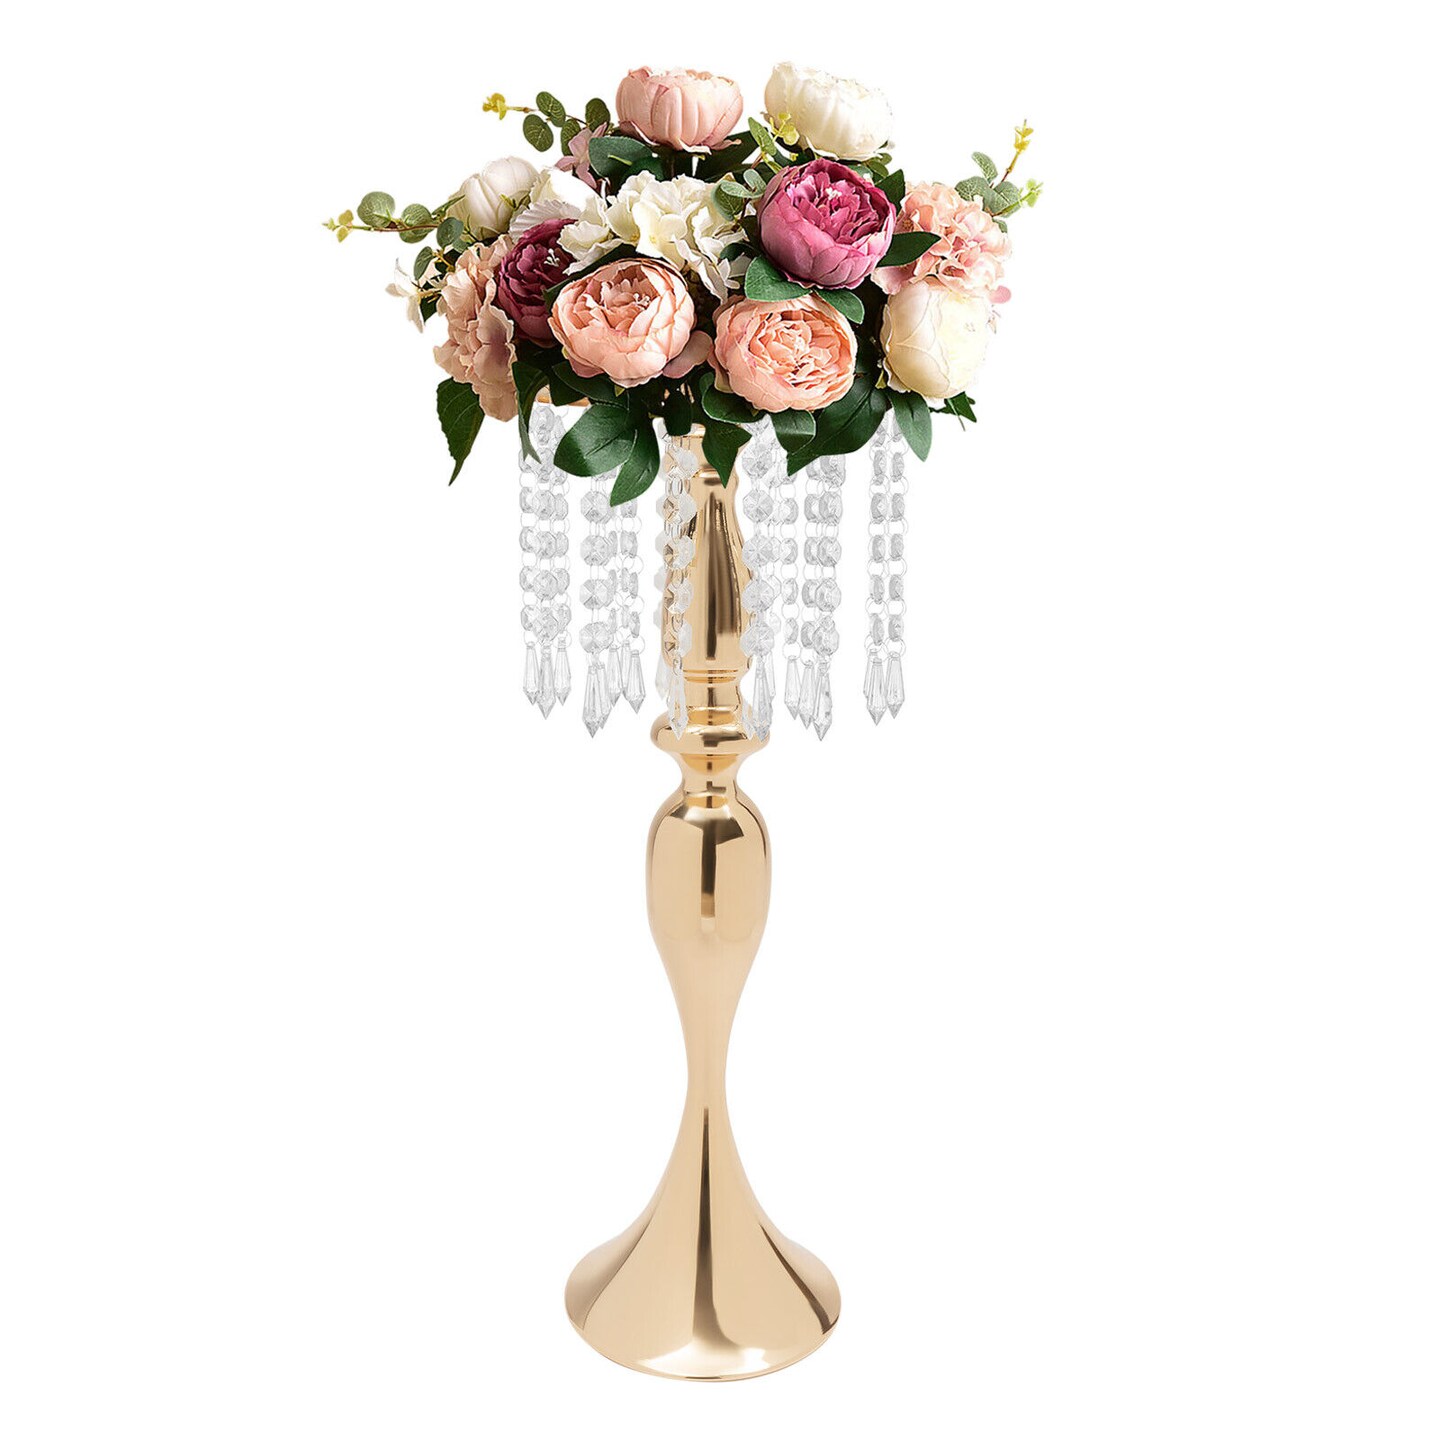 Kitcheniva 10 Flower Vase Stand Centerpieces for Wedding